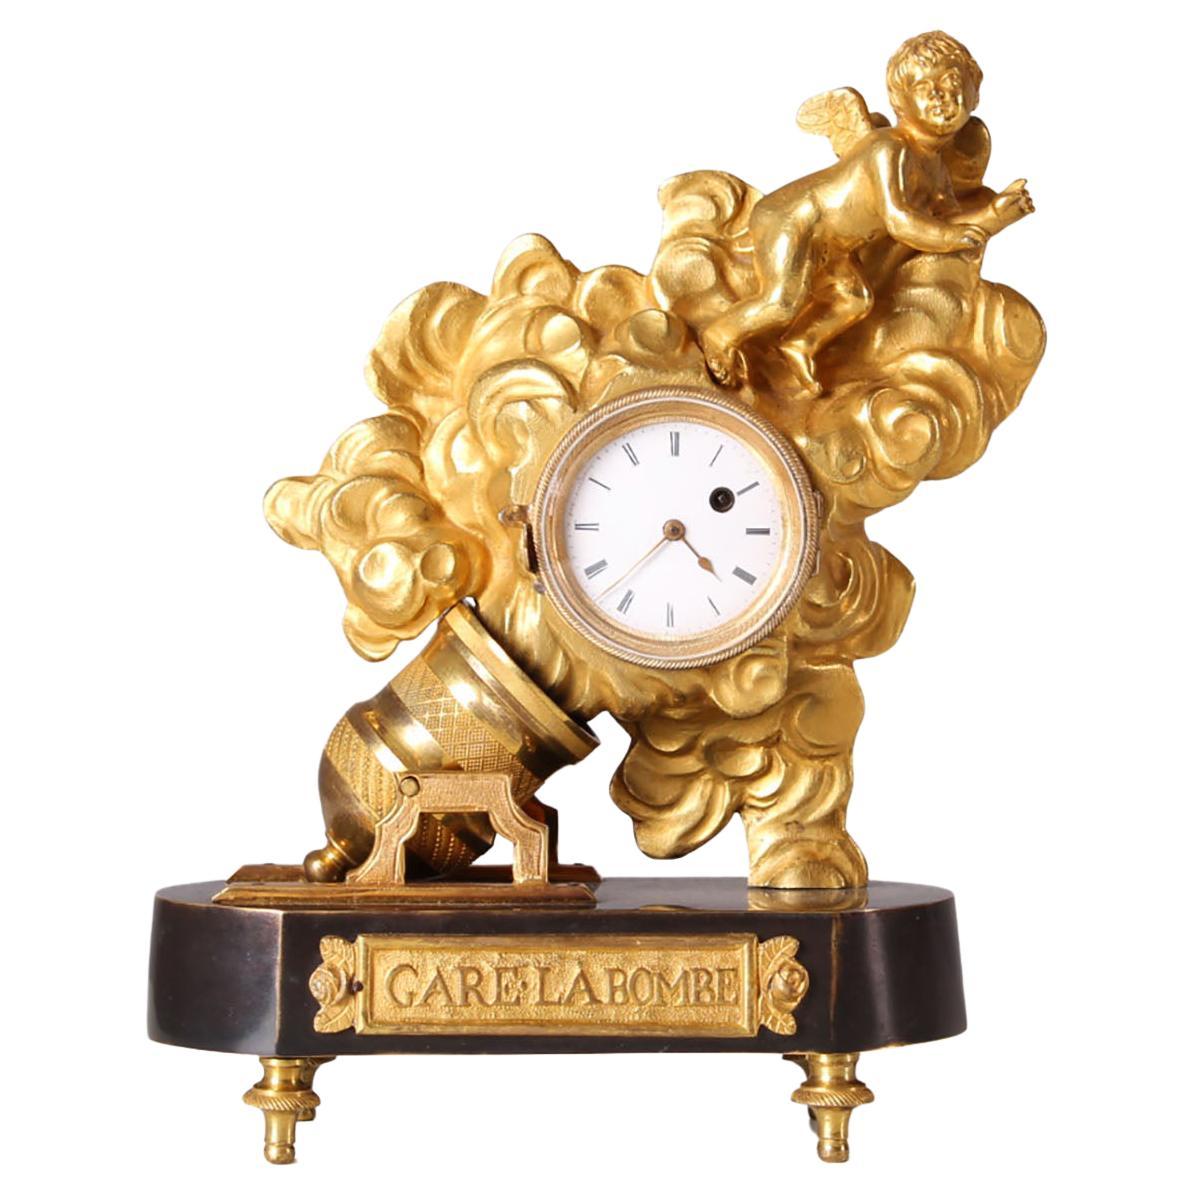 19th Century Miniatur Mantel Clock, Gare La Bombe, Cupido, France, Gilded Bronze For Sale